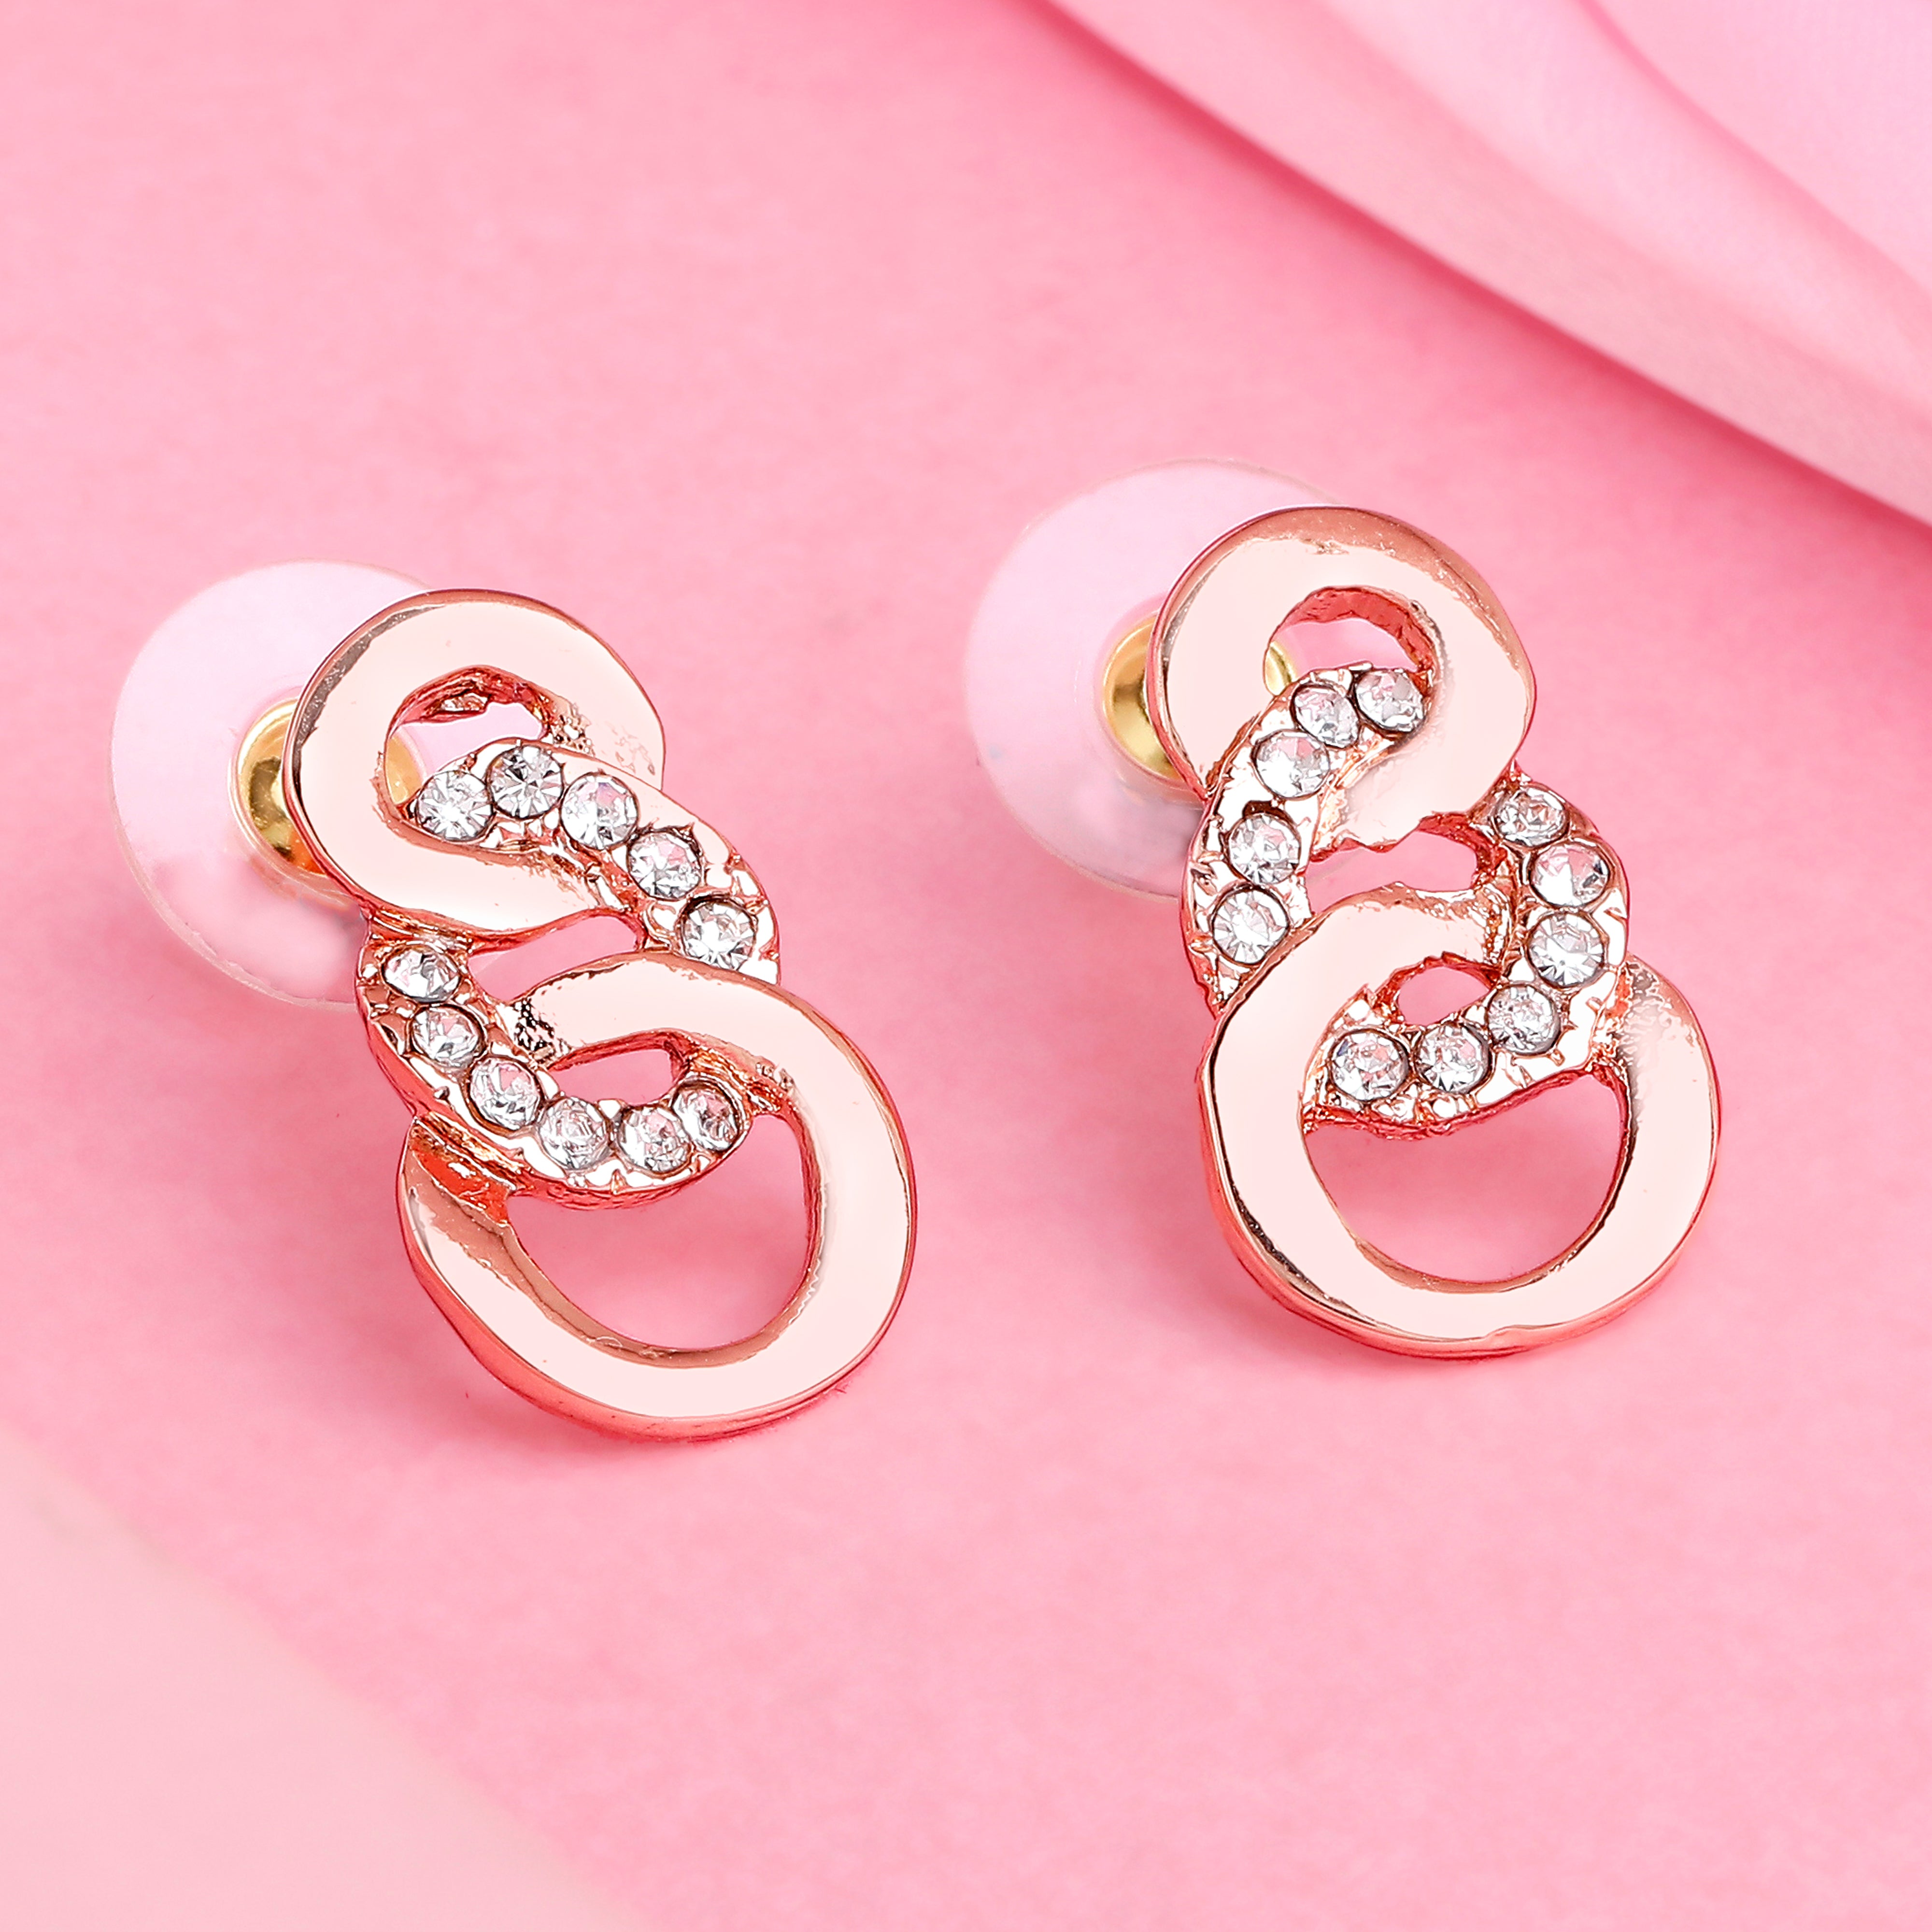 Buy Gold Earrings for Women by Silvermerc Designs Online | Ajio.com